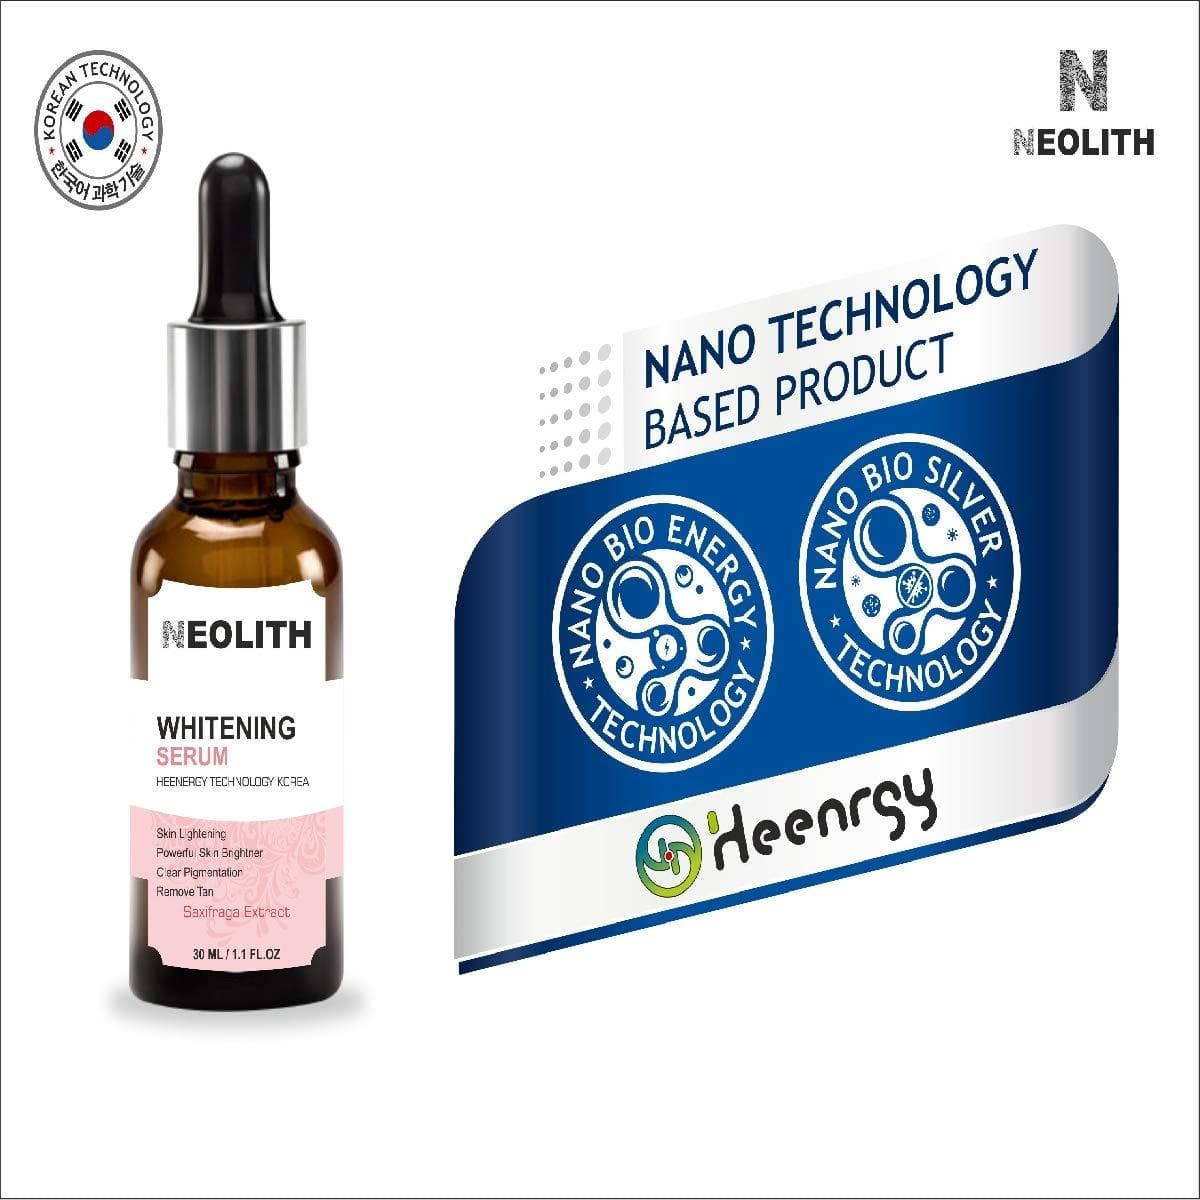 Whitening serum (30ml) | NEOLITH - halfpeapp